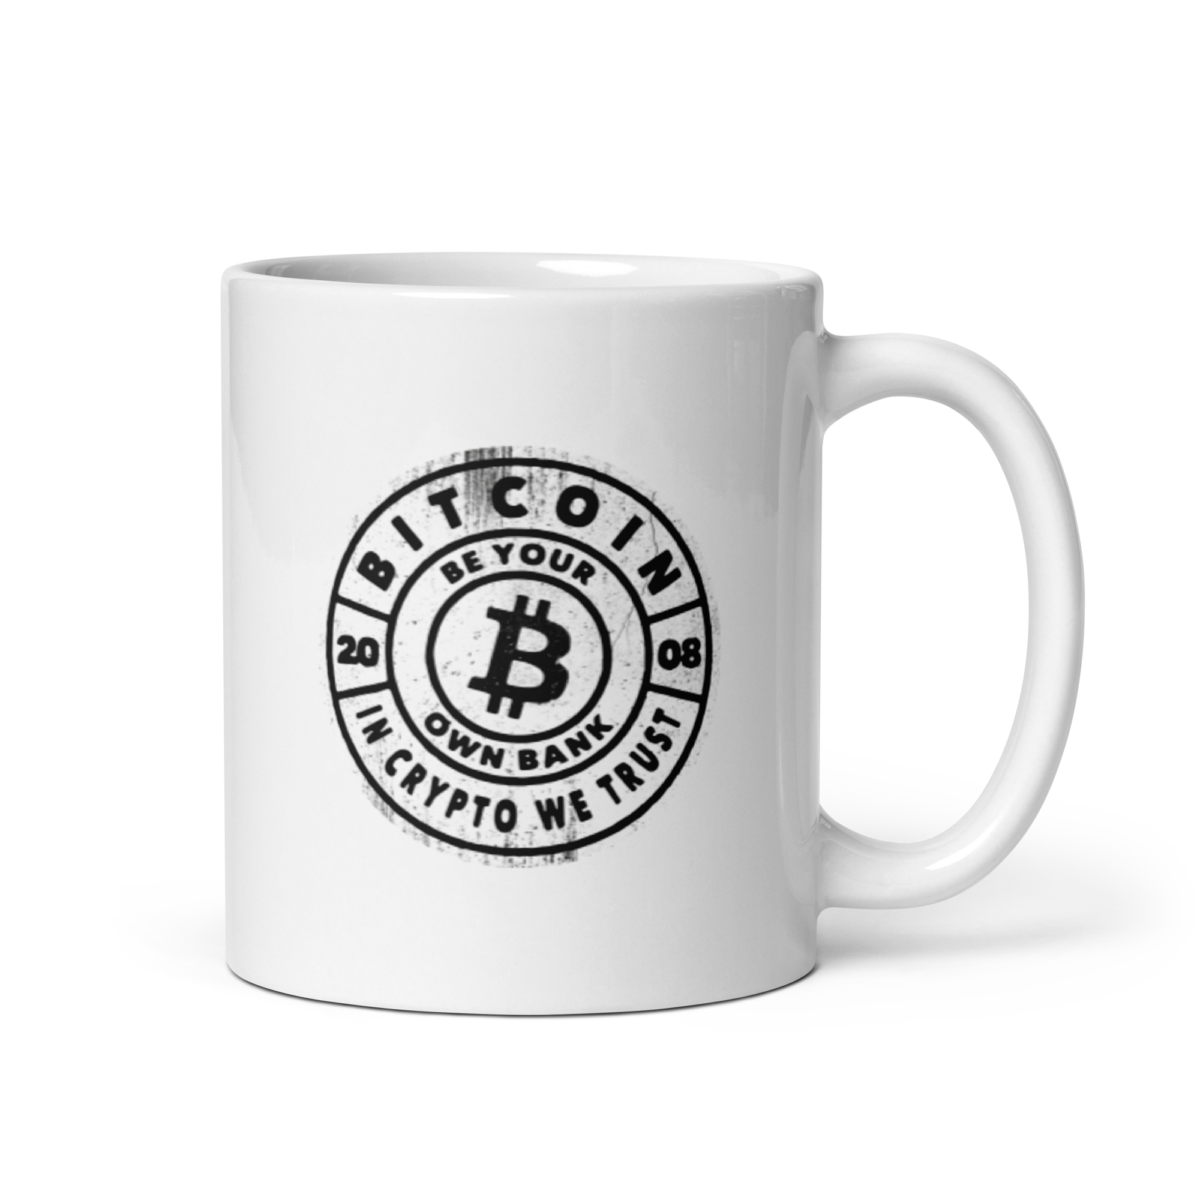 white glossy mug 11oz handle on right 635bd8f0bf0b3 - Bitcoin Be Your Own Bank mug